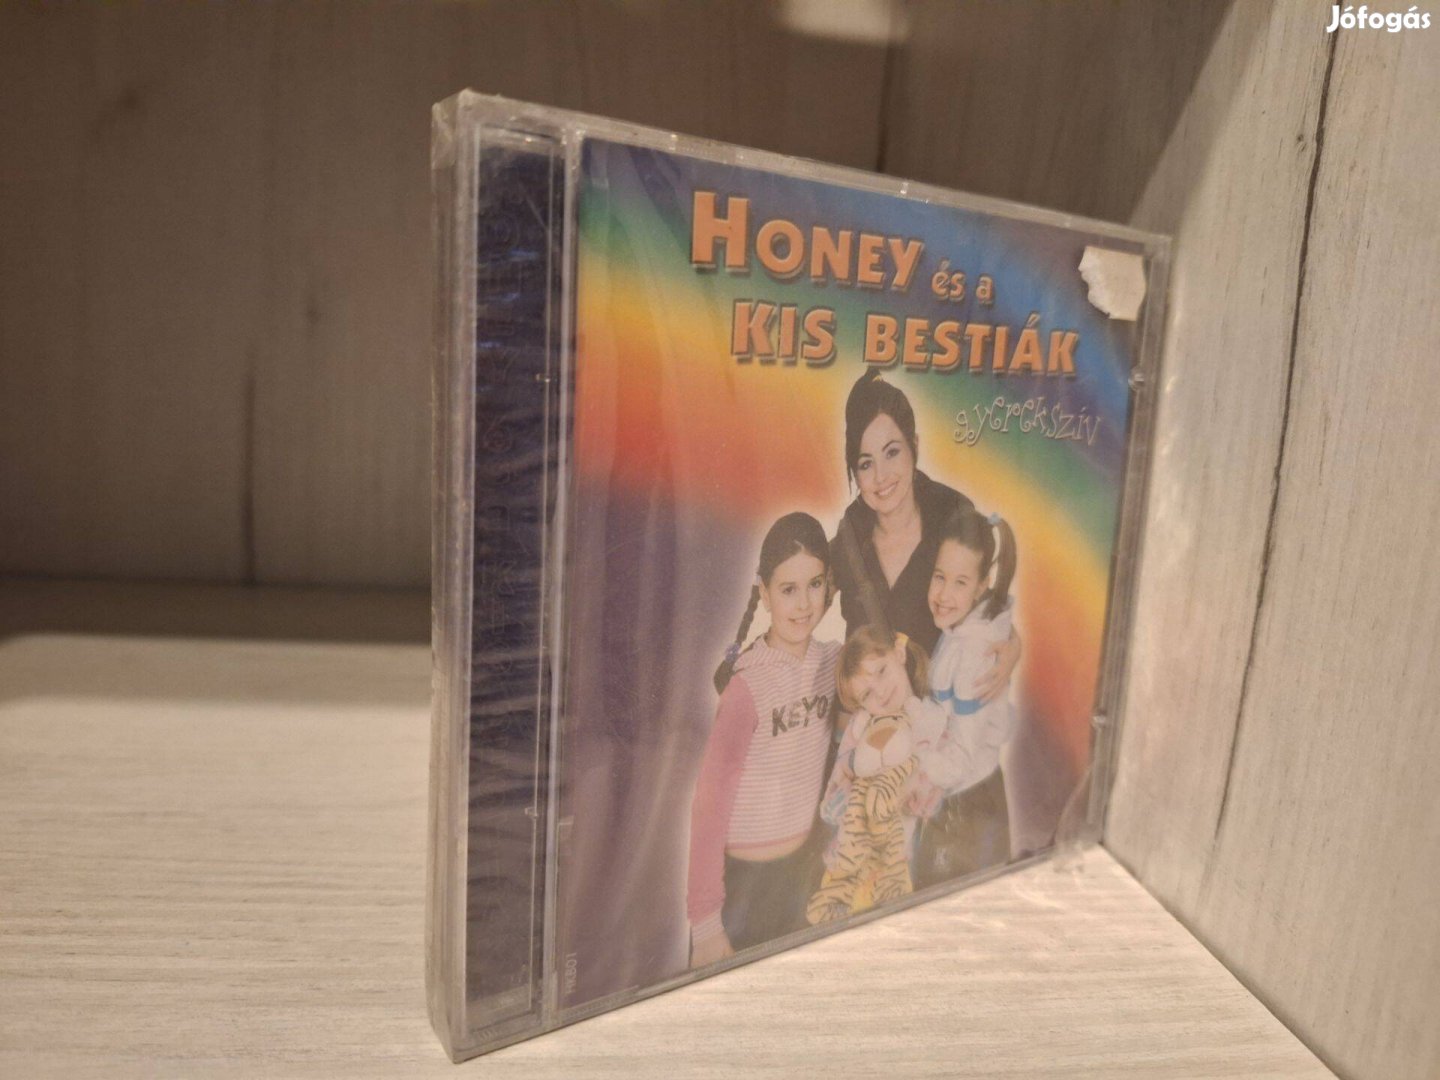 Honey és a kis bestiák - Gyerekszív - Új CD